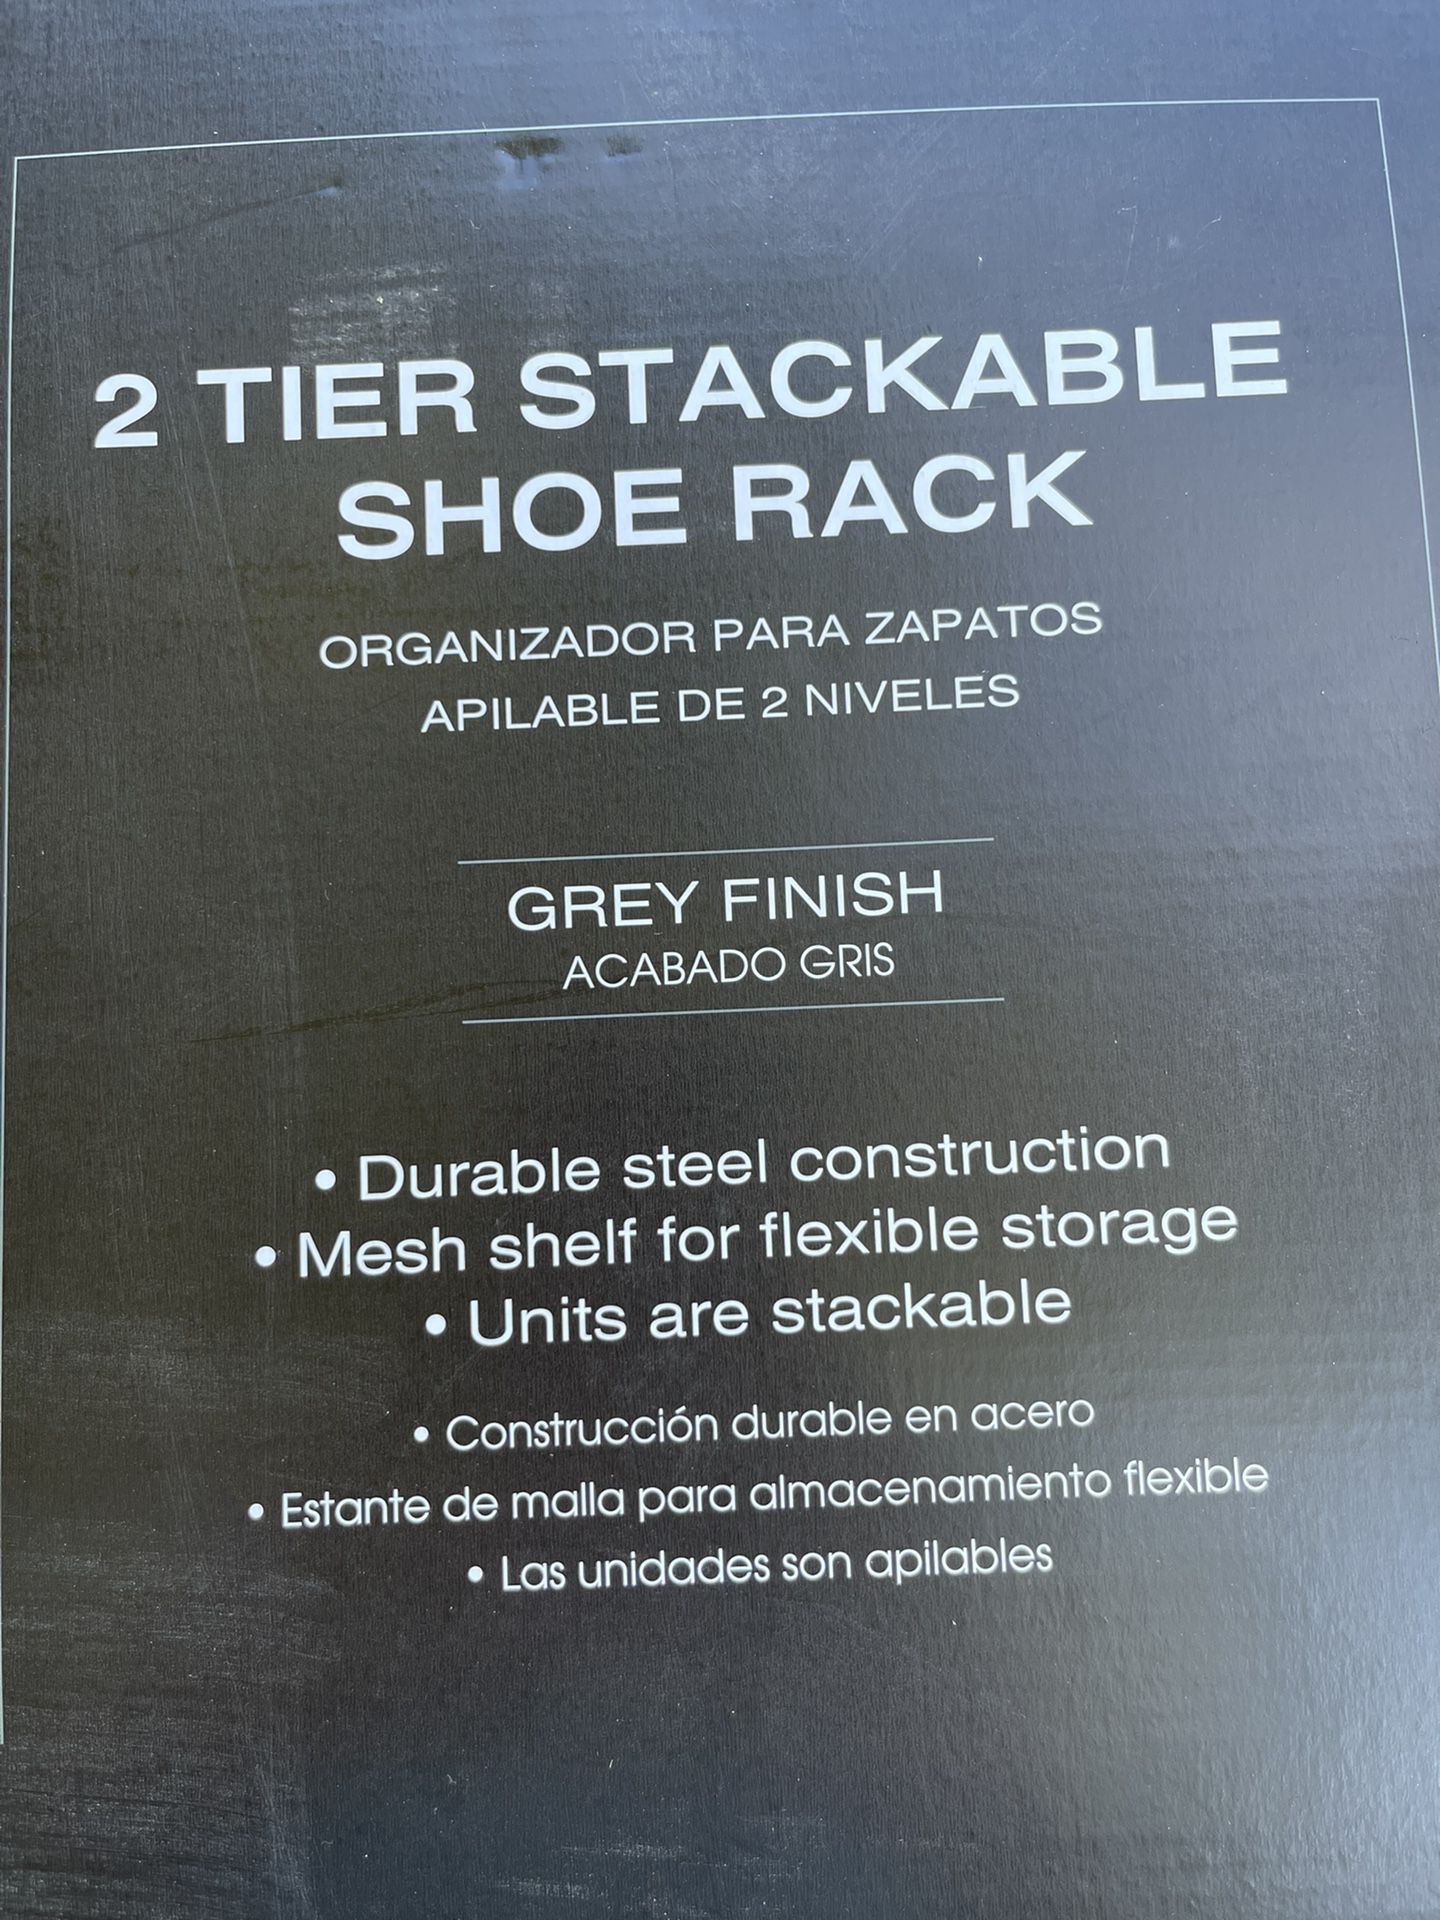 2 Tier Shoe Rack - BRAND NEW!  Grey in color. Steel construction